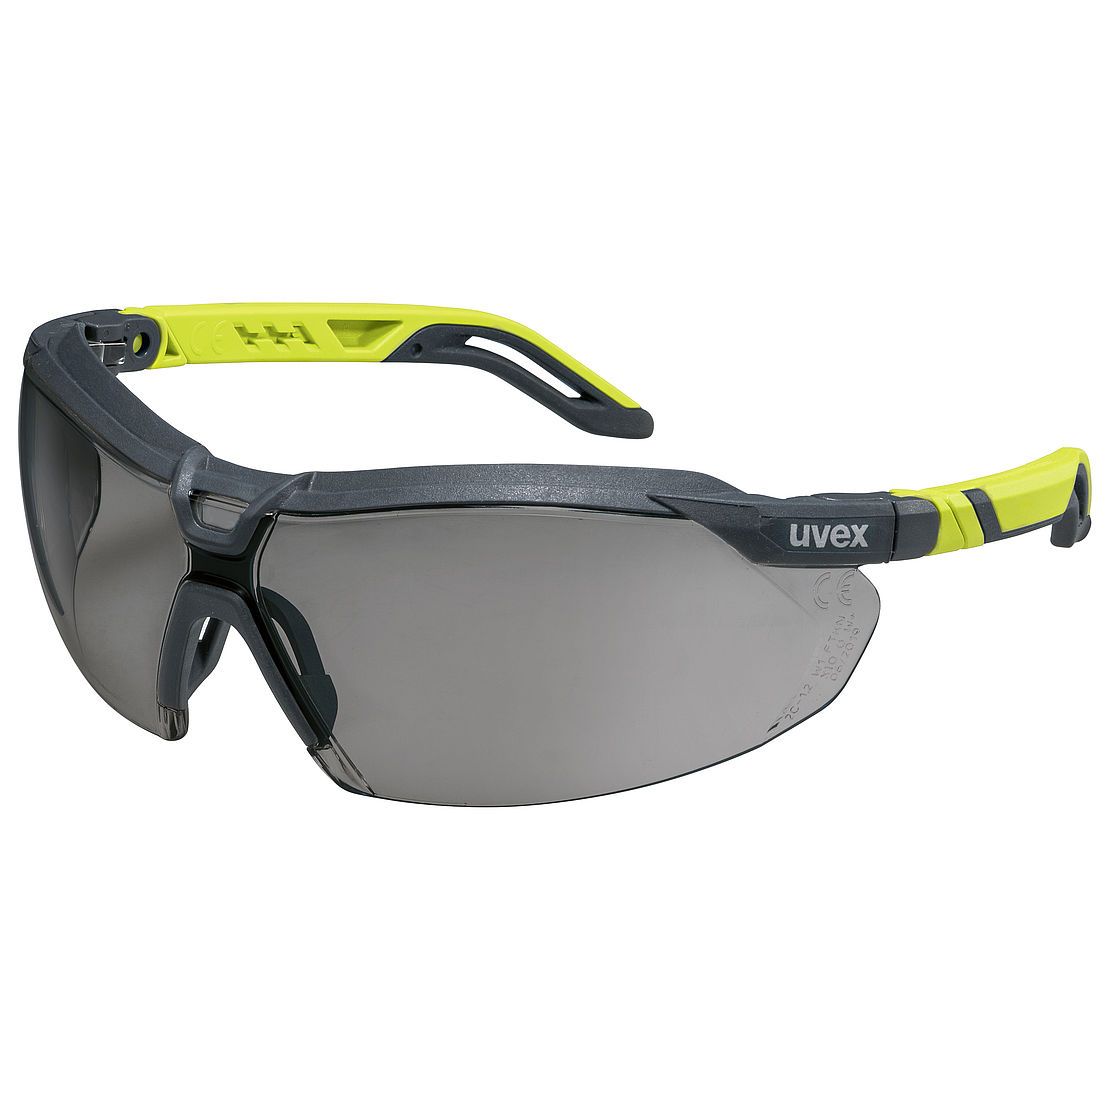 Uvex i-5 Safety Glasses Grey and Lime Frame Grey HC-AF Lens Gear Australia by G8